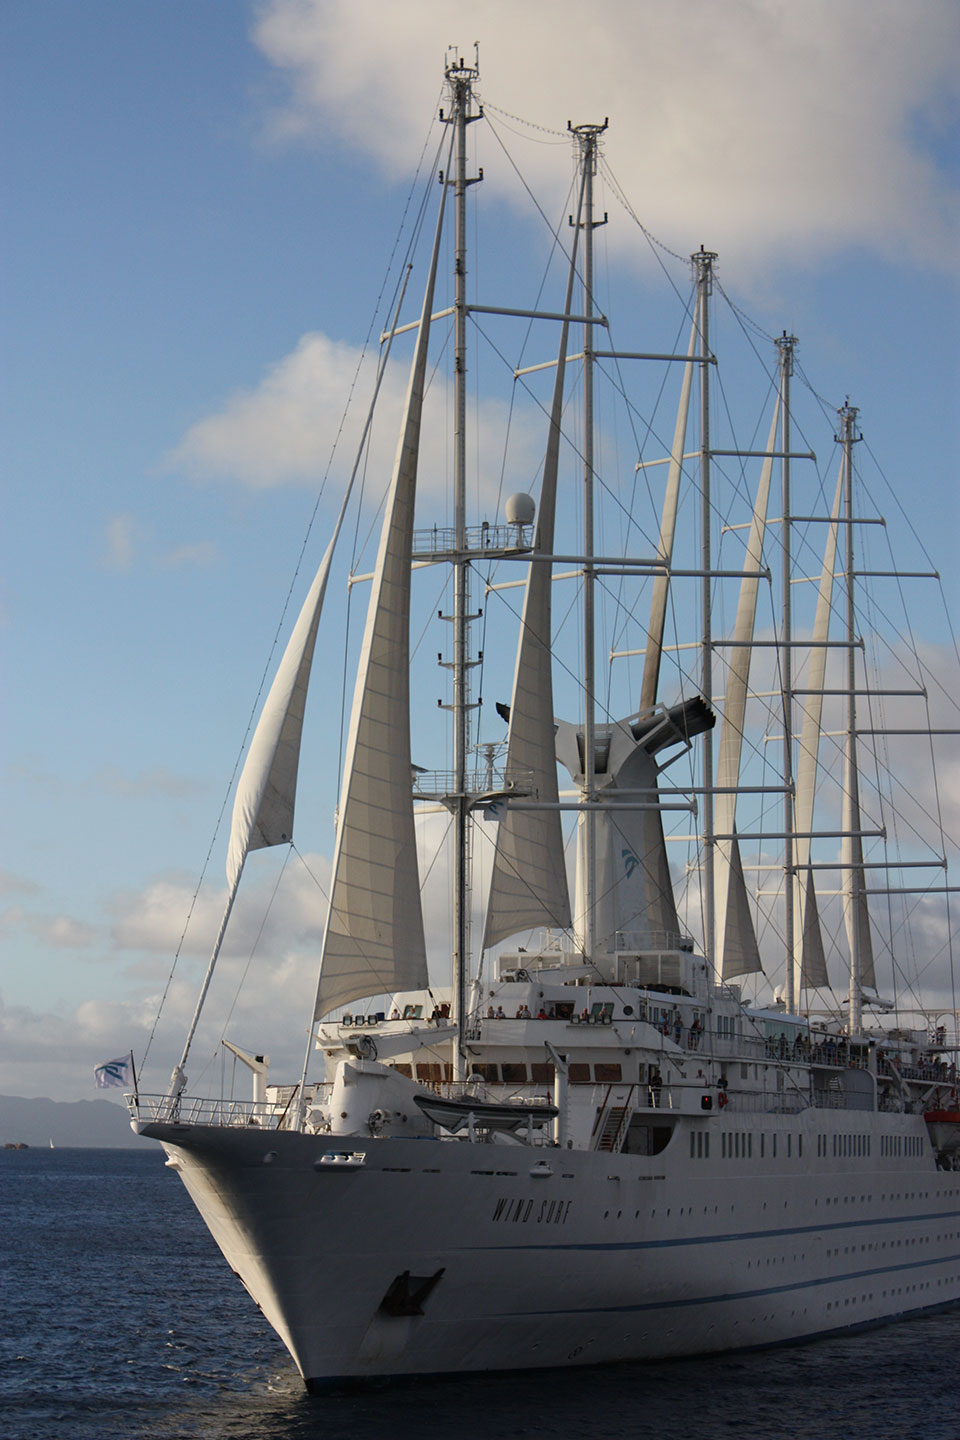 Windstar WindSurf sailing ship